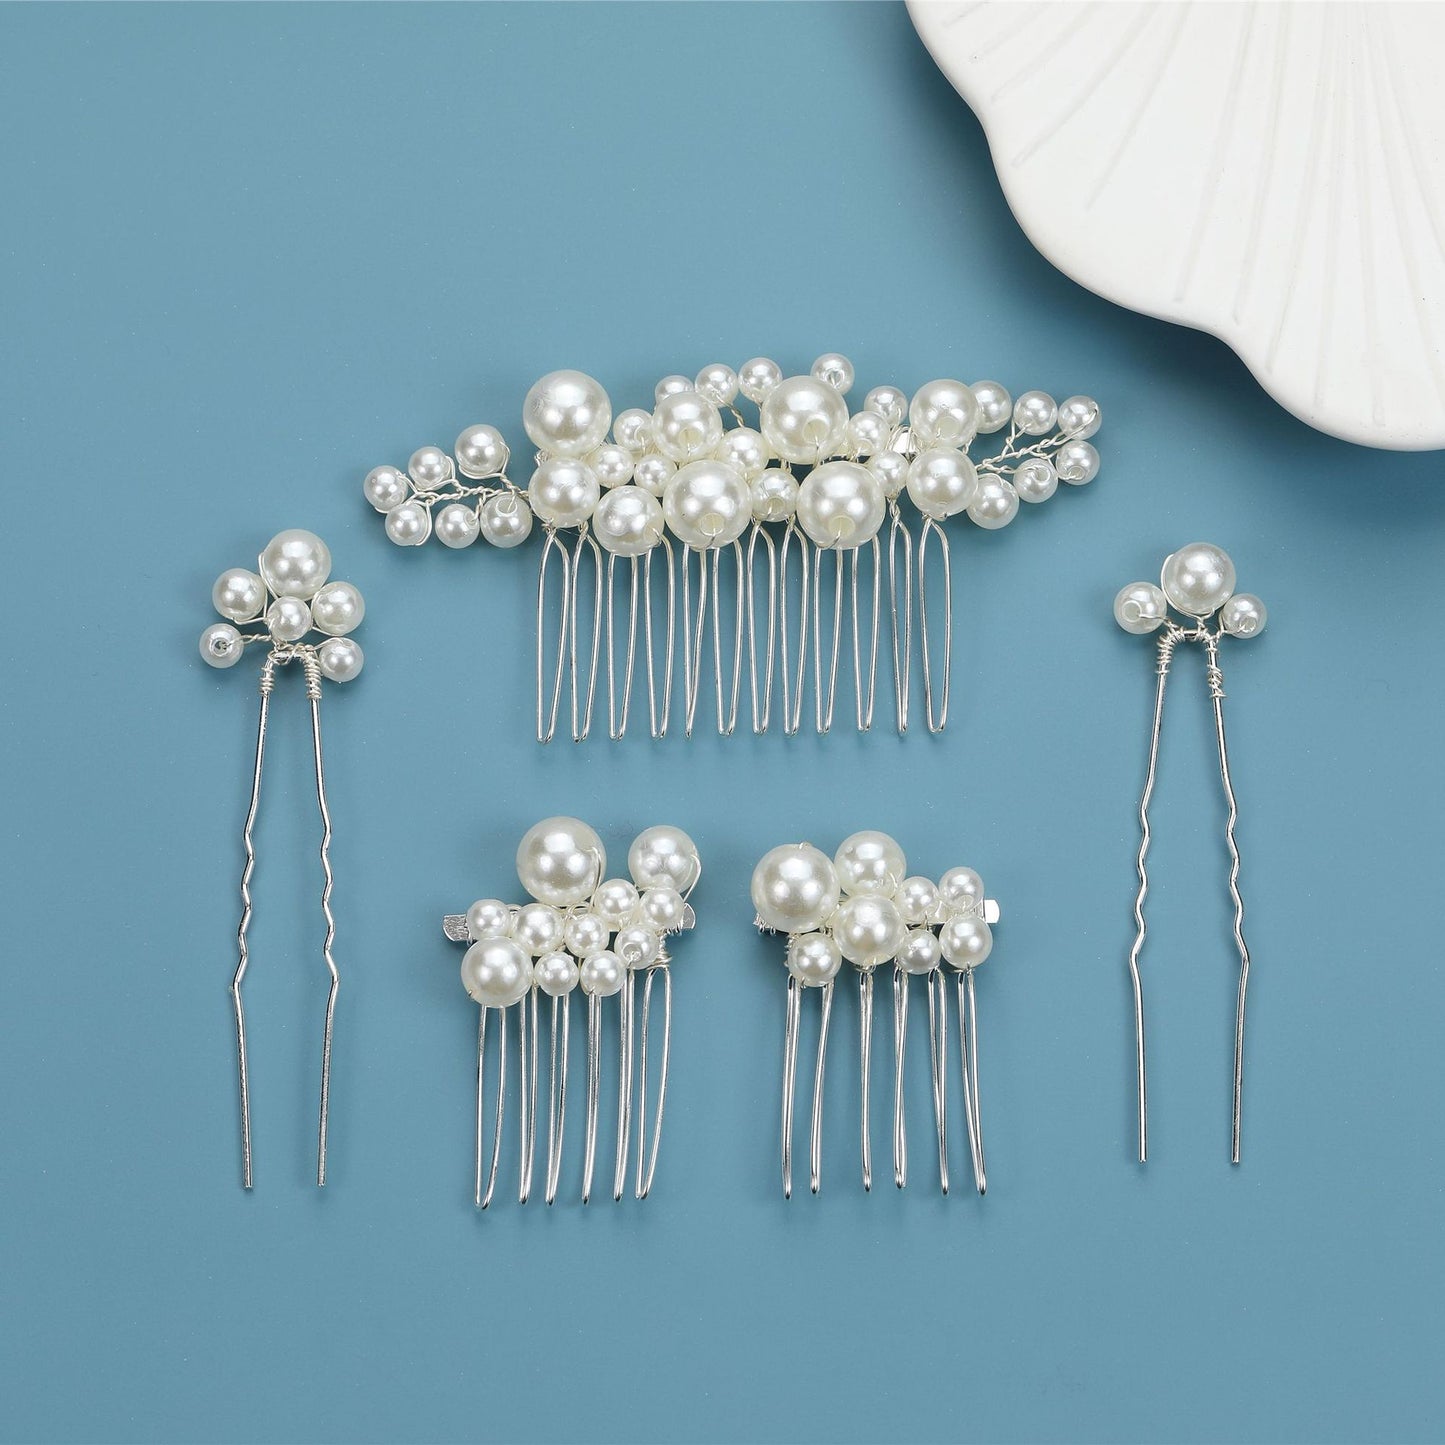 Retro Baroque Pearl Hair Fork Bridal Hairpin Hair Accessories Set